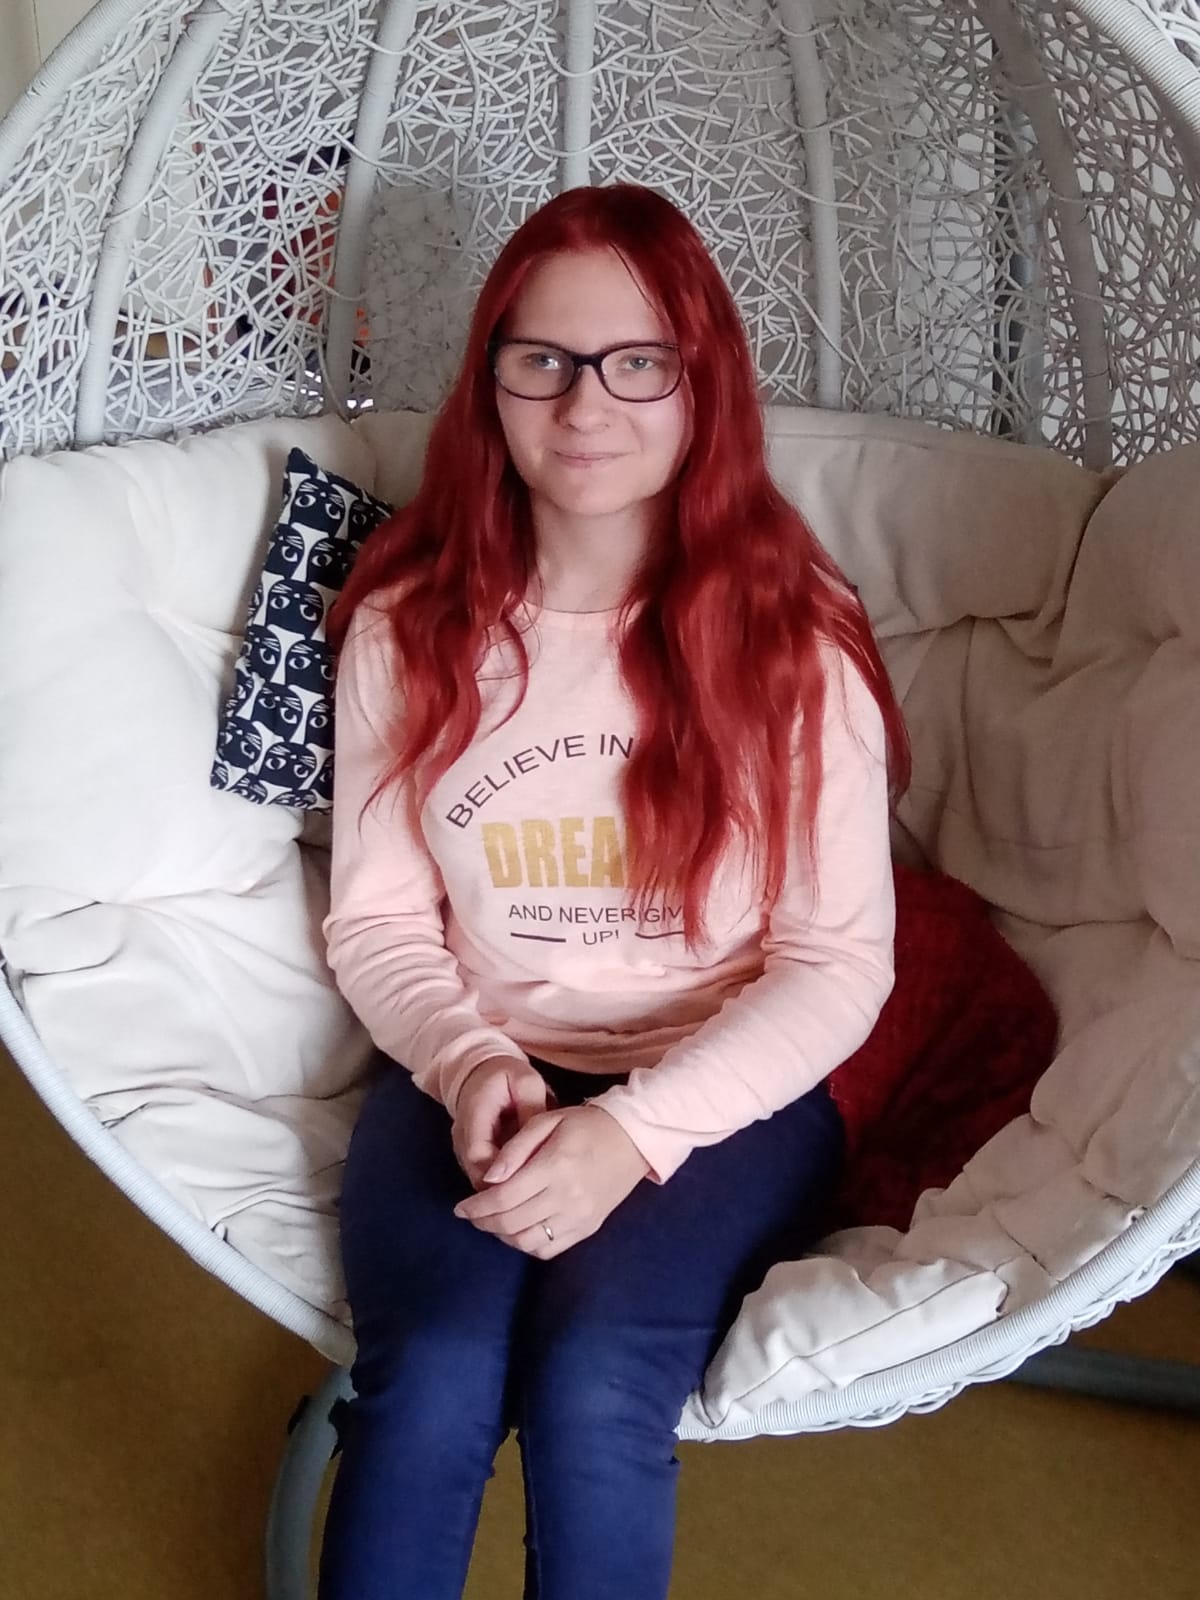 Jenni Nissisen kuvassa hän itse: nuori punatukkainen nainen, joka istuu korituolissa.